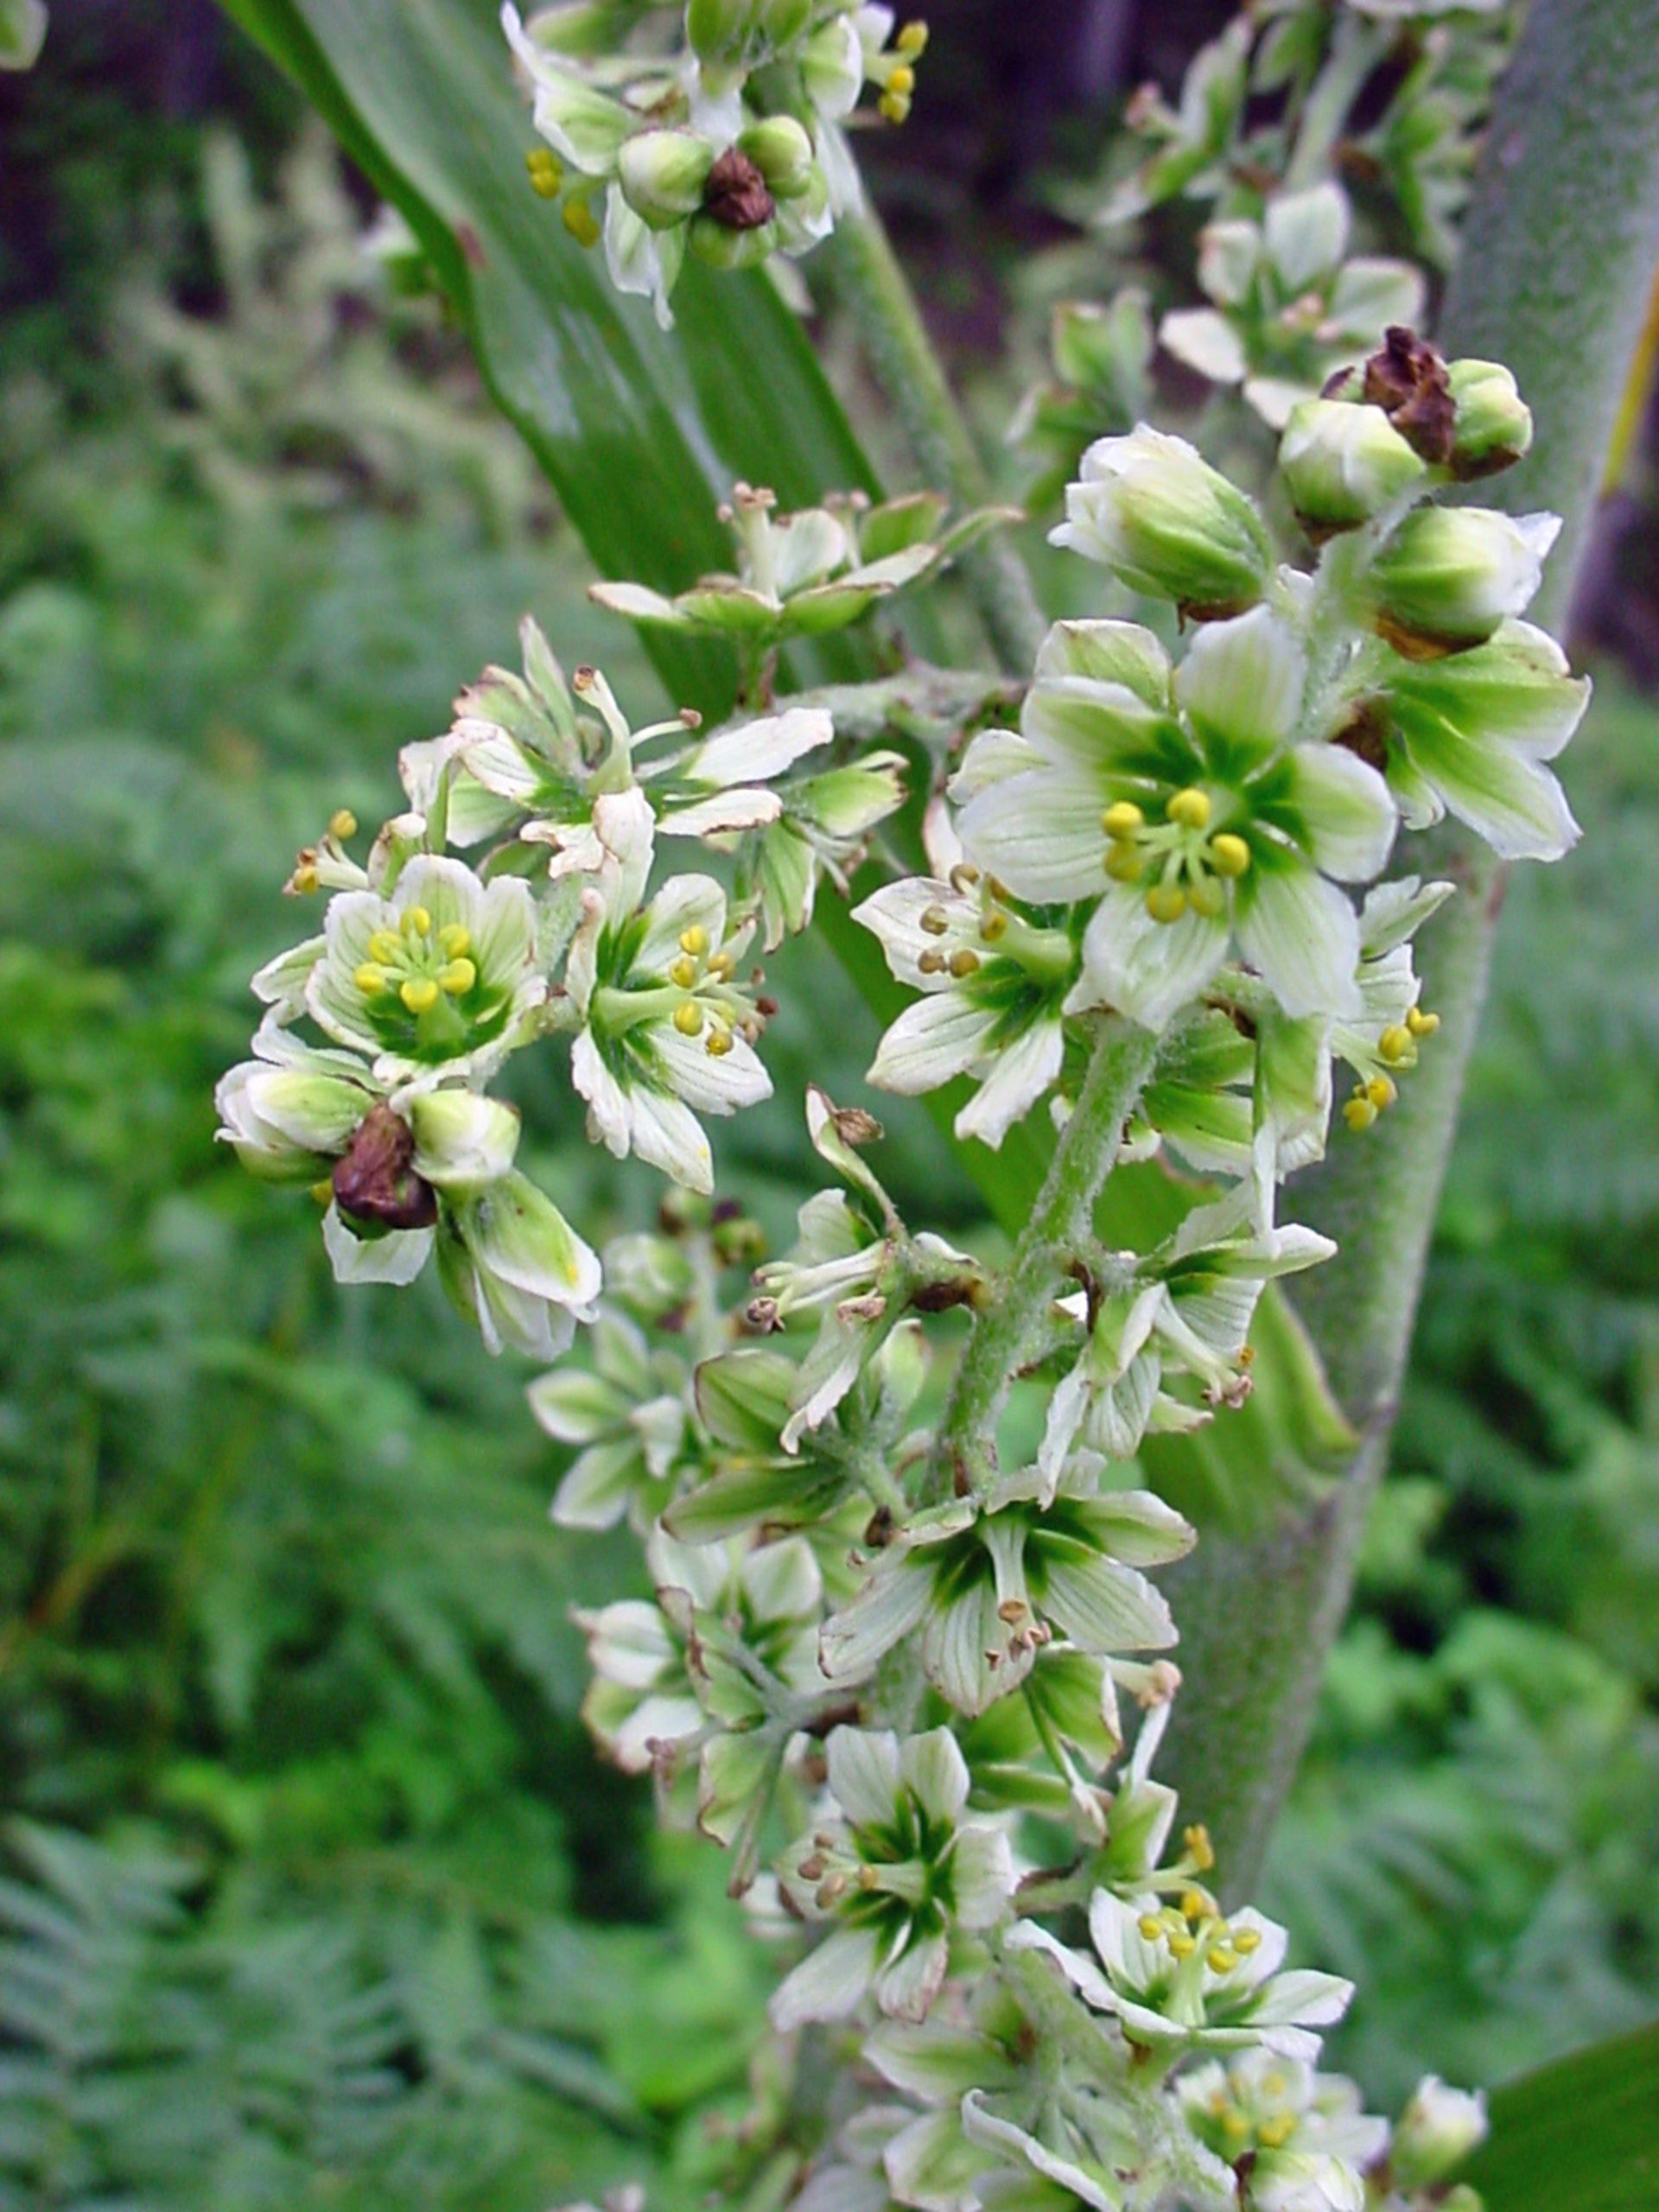 Veratrum-10-most-poisonous-flowers